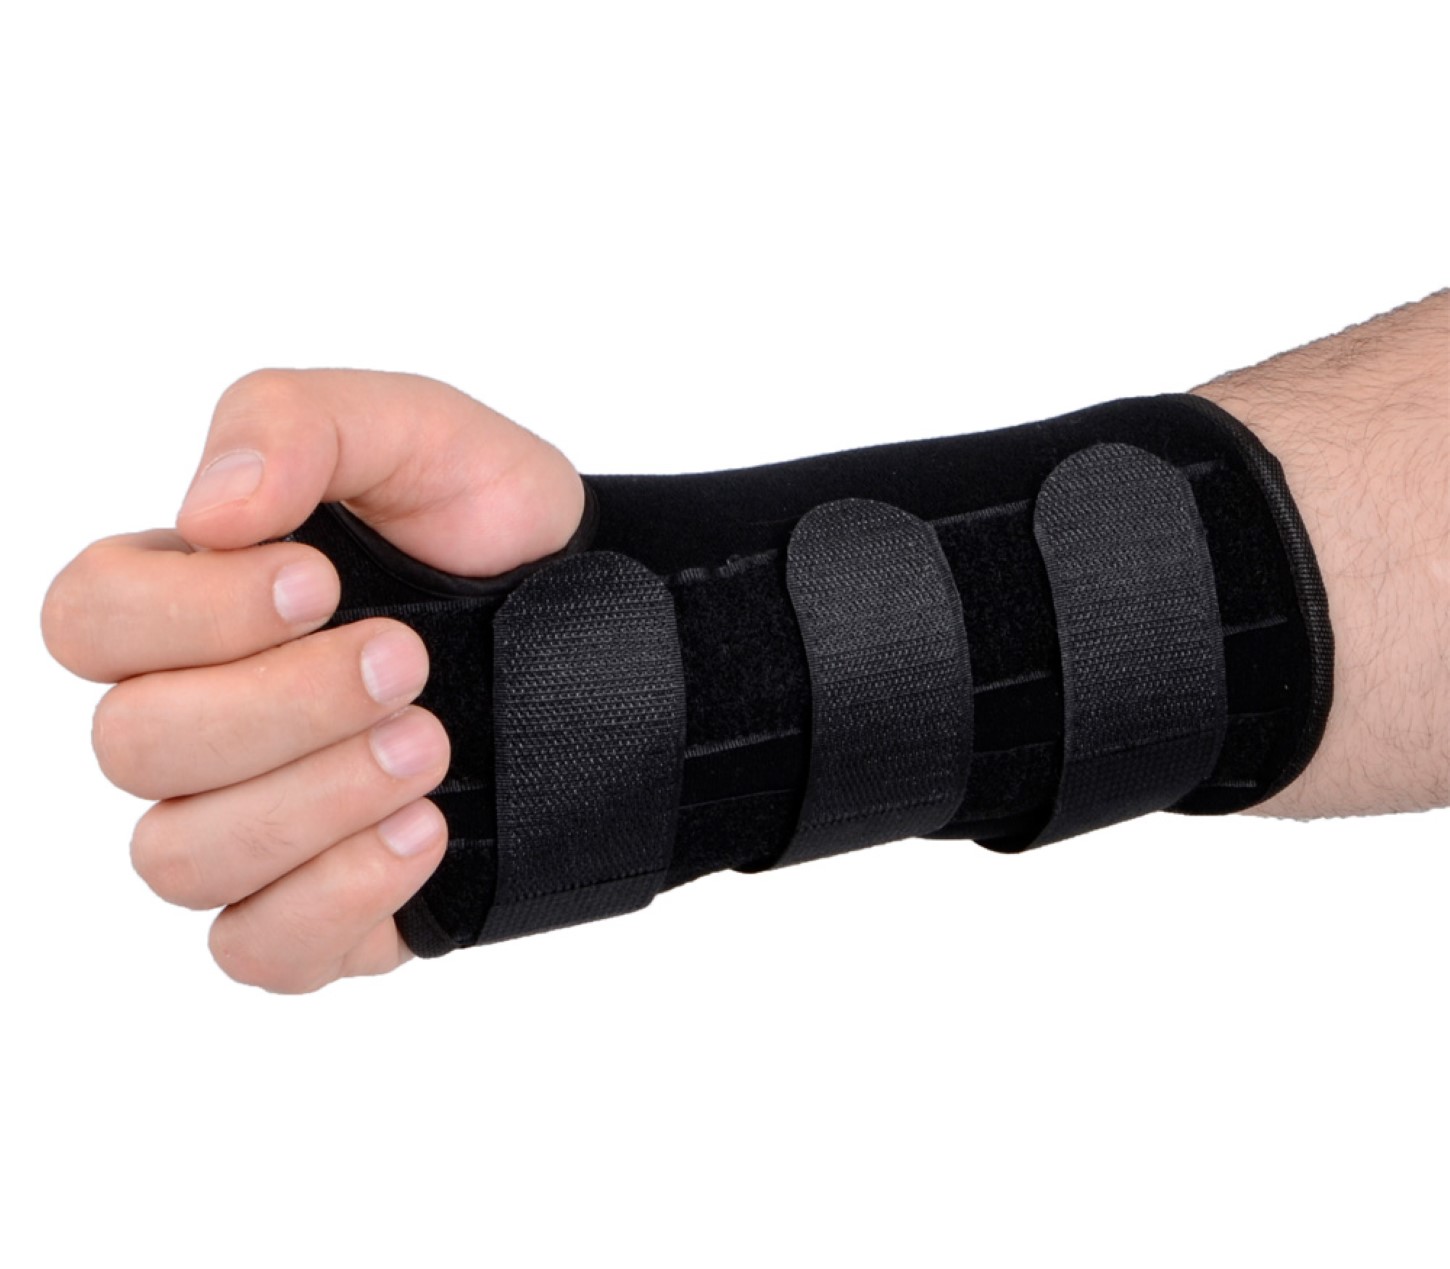 ayex Armstütze Arm Brace Handgelenkbandage - Manschette für z.B. Kamera - Schmerzlinderung Trageunterstützung mit Klettverschlüssen, rechte Hand